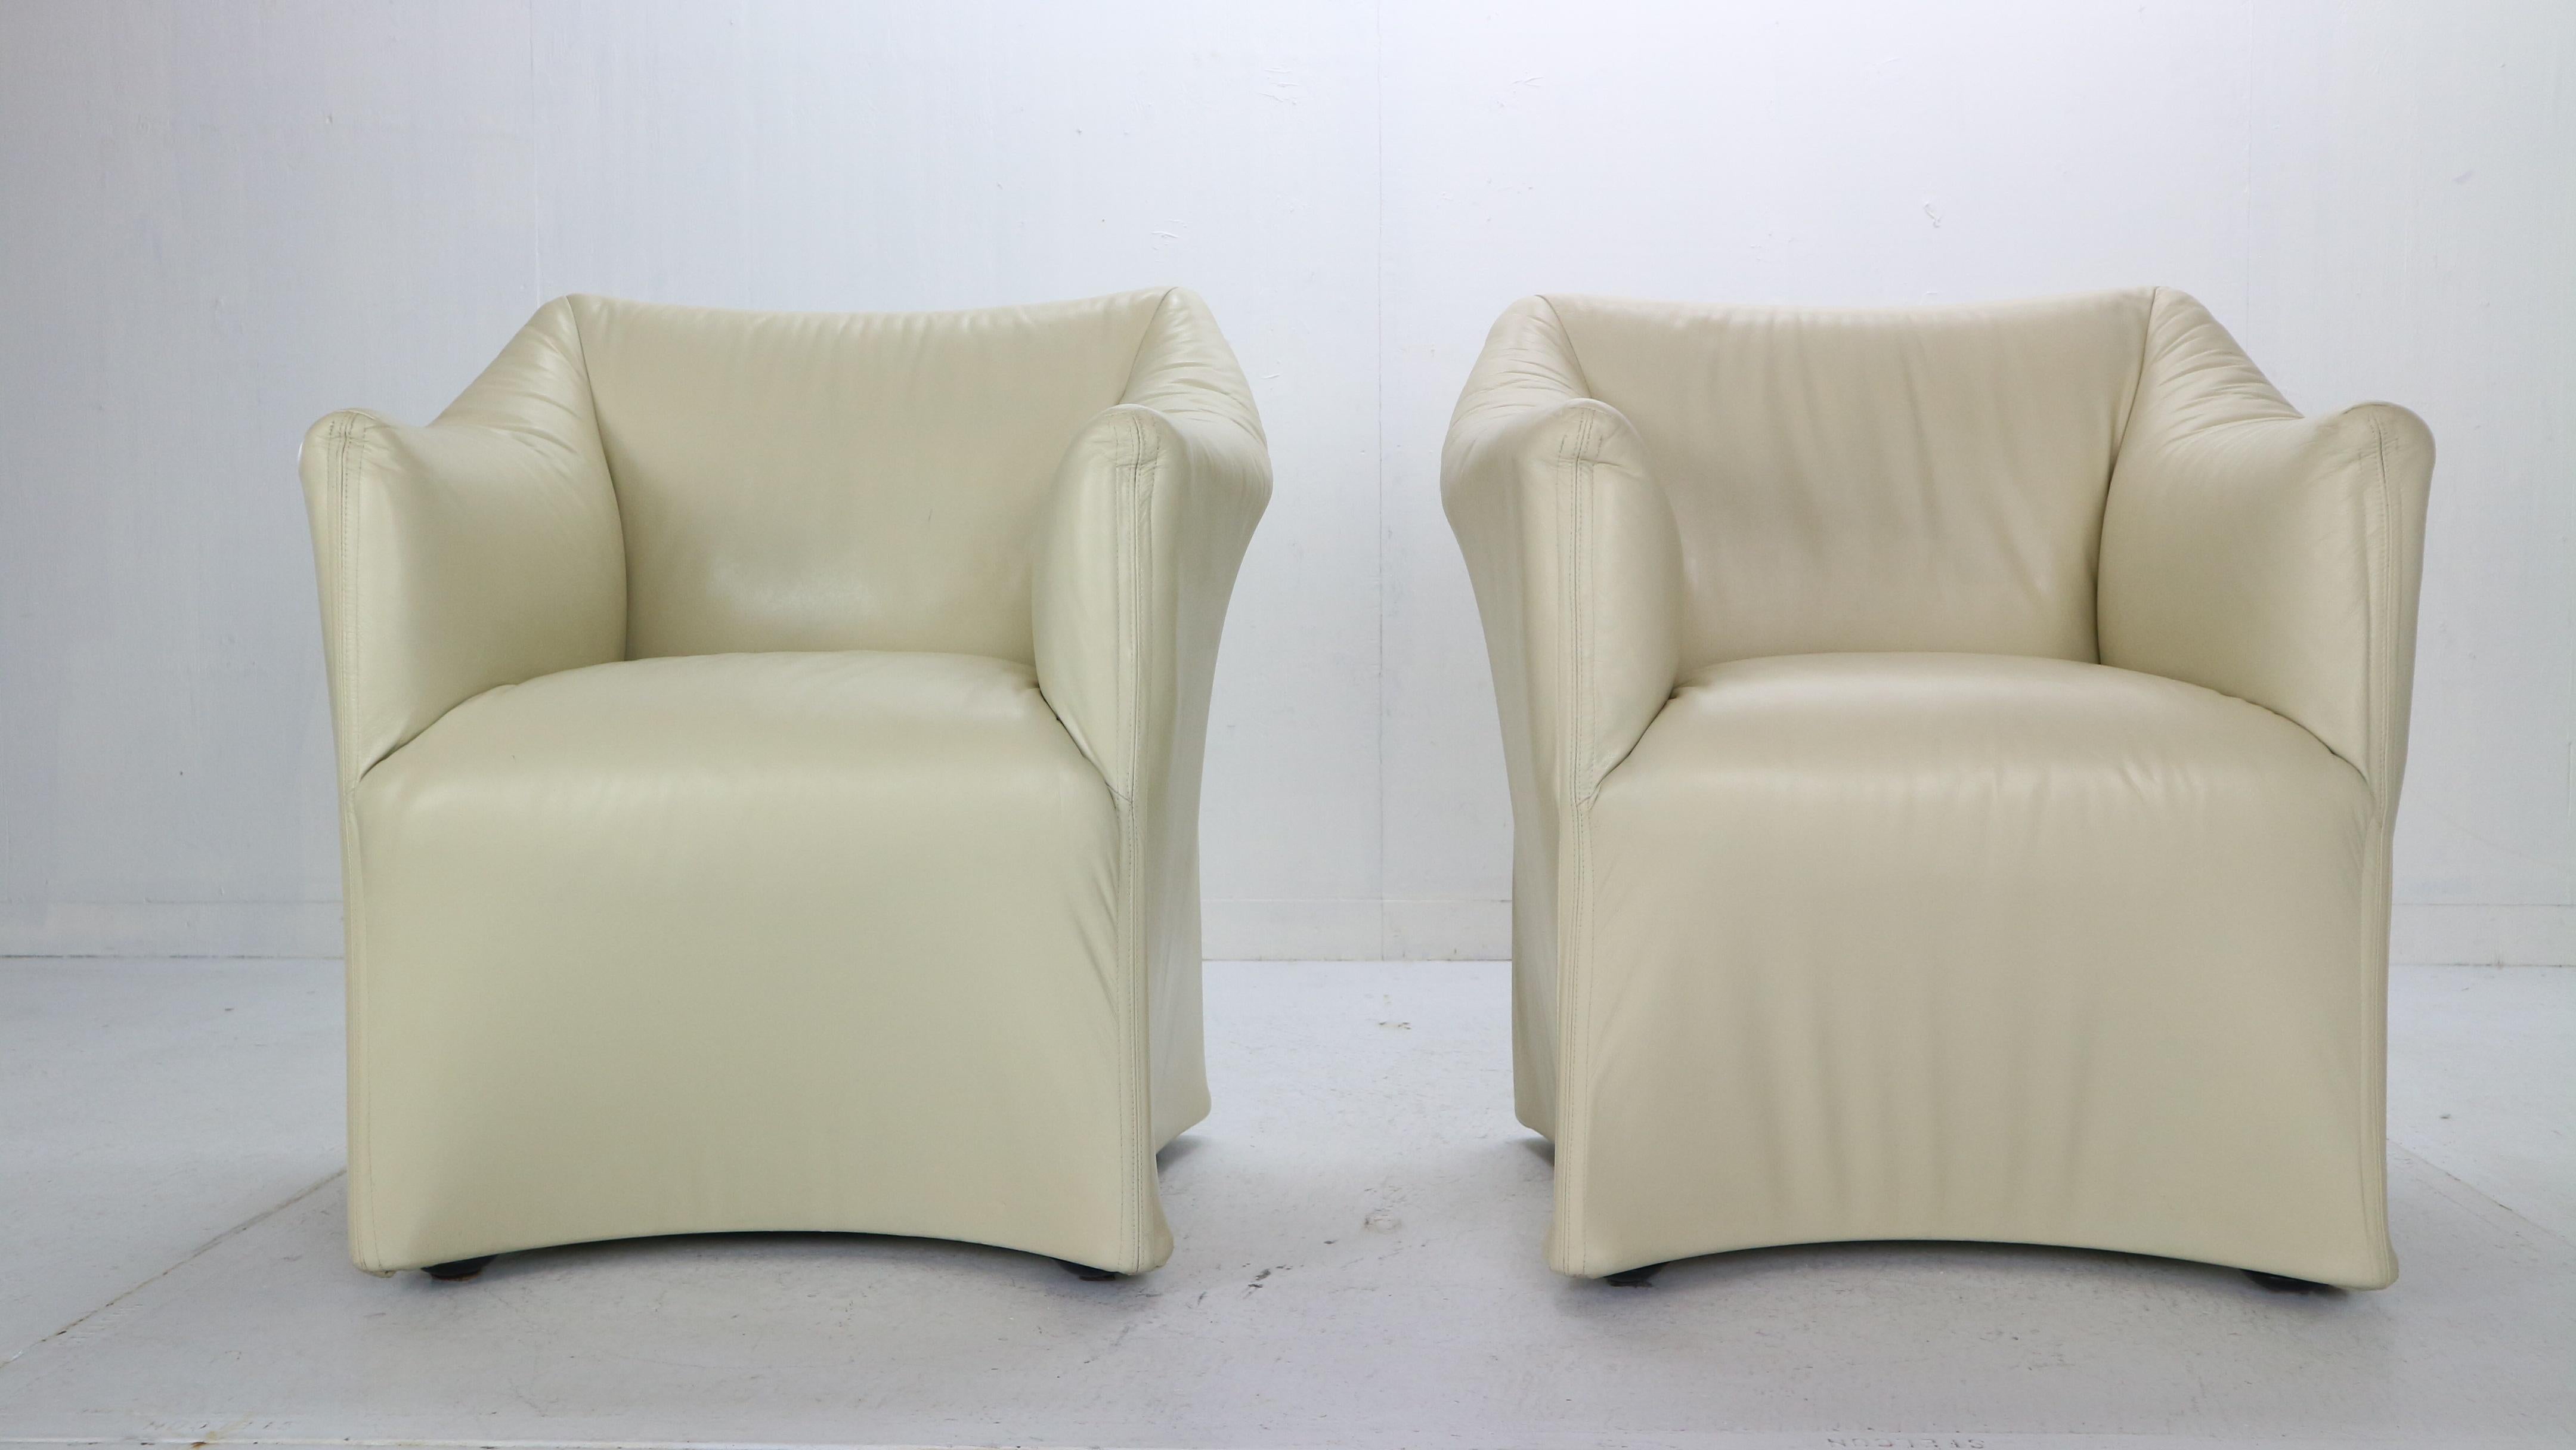 Zwei Lounge- oder Sesselpaare, entworfen von Mario Bellini für die Cassina-Manufaktur in den 1970er Jahren, Italien.
Modell Nr.: 684,
Crèmefarbener Originallederbezug, Stahlrahmenkonstruktion auf Rollen.
Tentazione bedeutet Verführung, ein